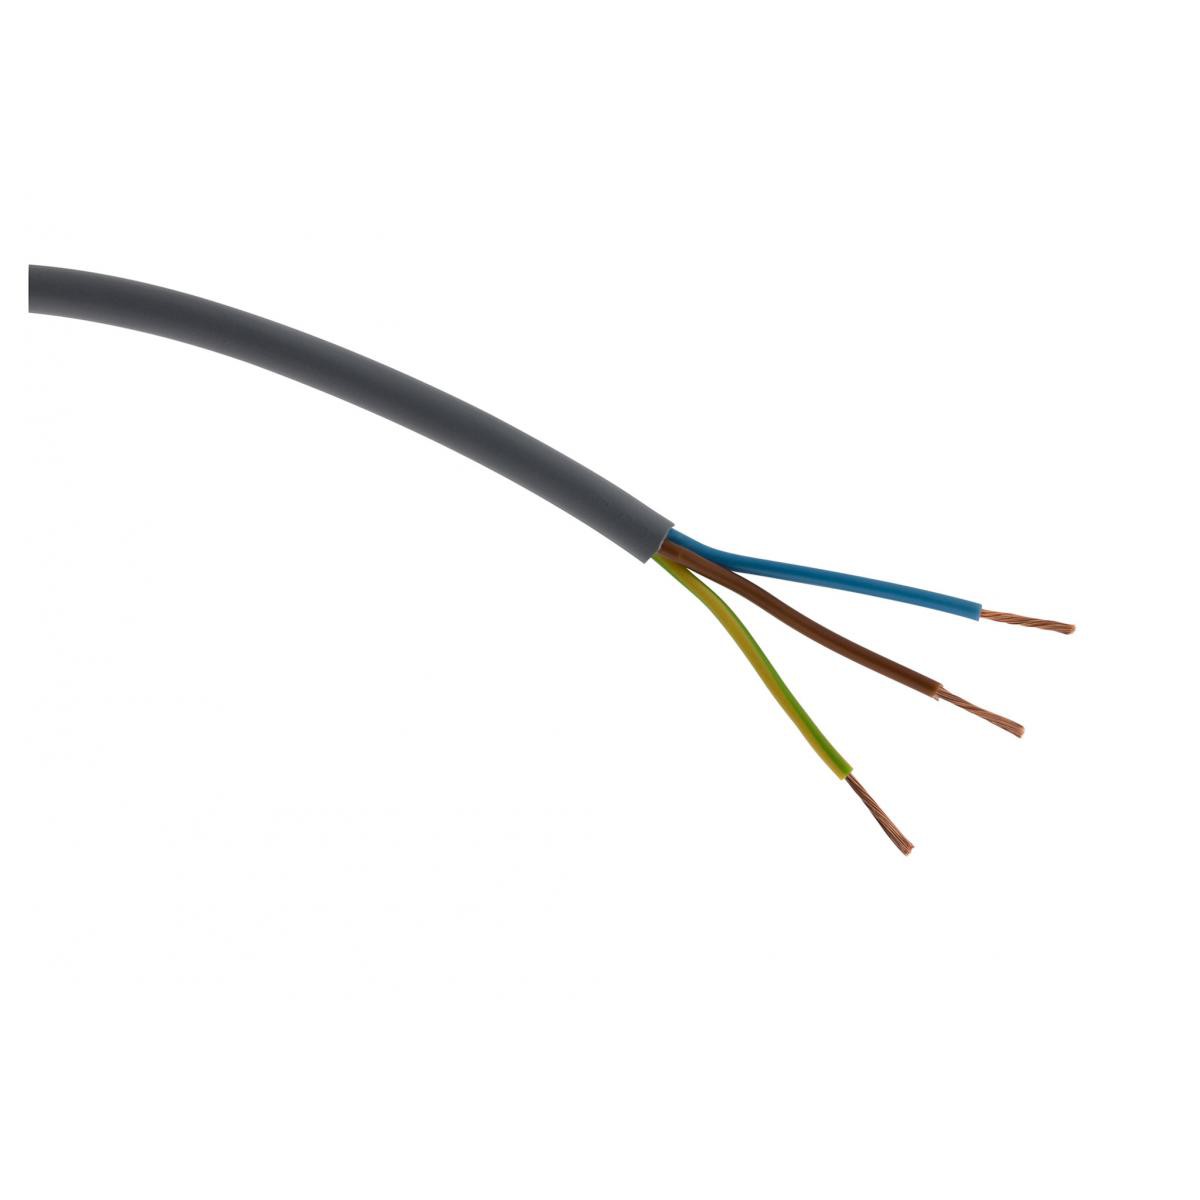 Zenitech - Câble d'alimentation électrique HO5VV-F 3G1,5 Gris - 50m - Fils et câbles électriques